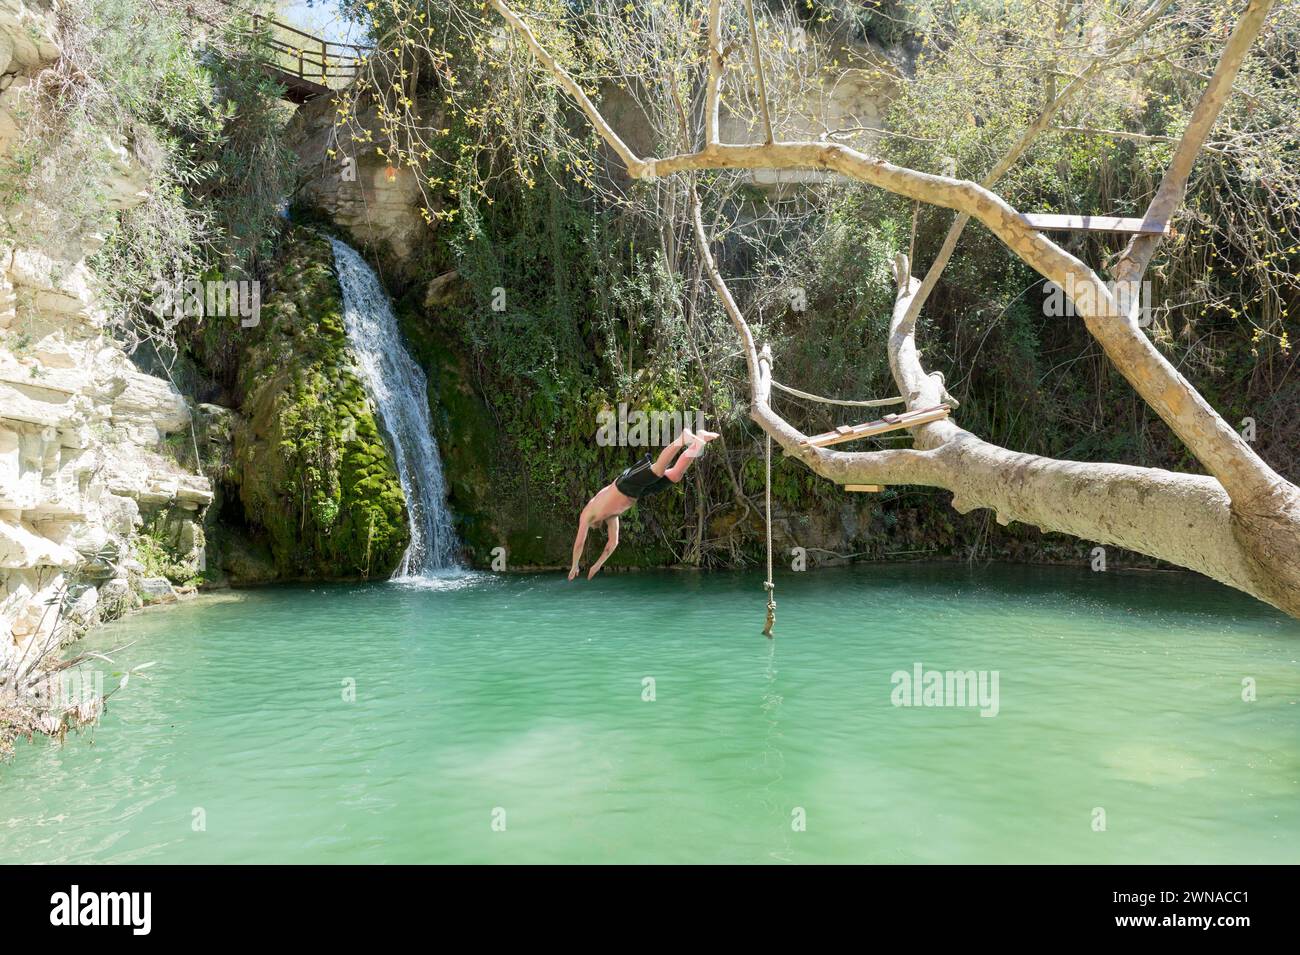 Baden am Adonis Wasserfall in der Nähe des Dorfes Akoursos auf Zypern. Stockfoto